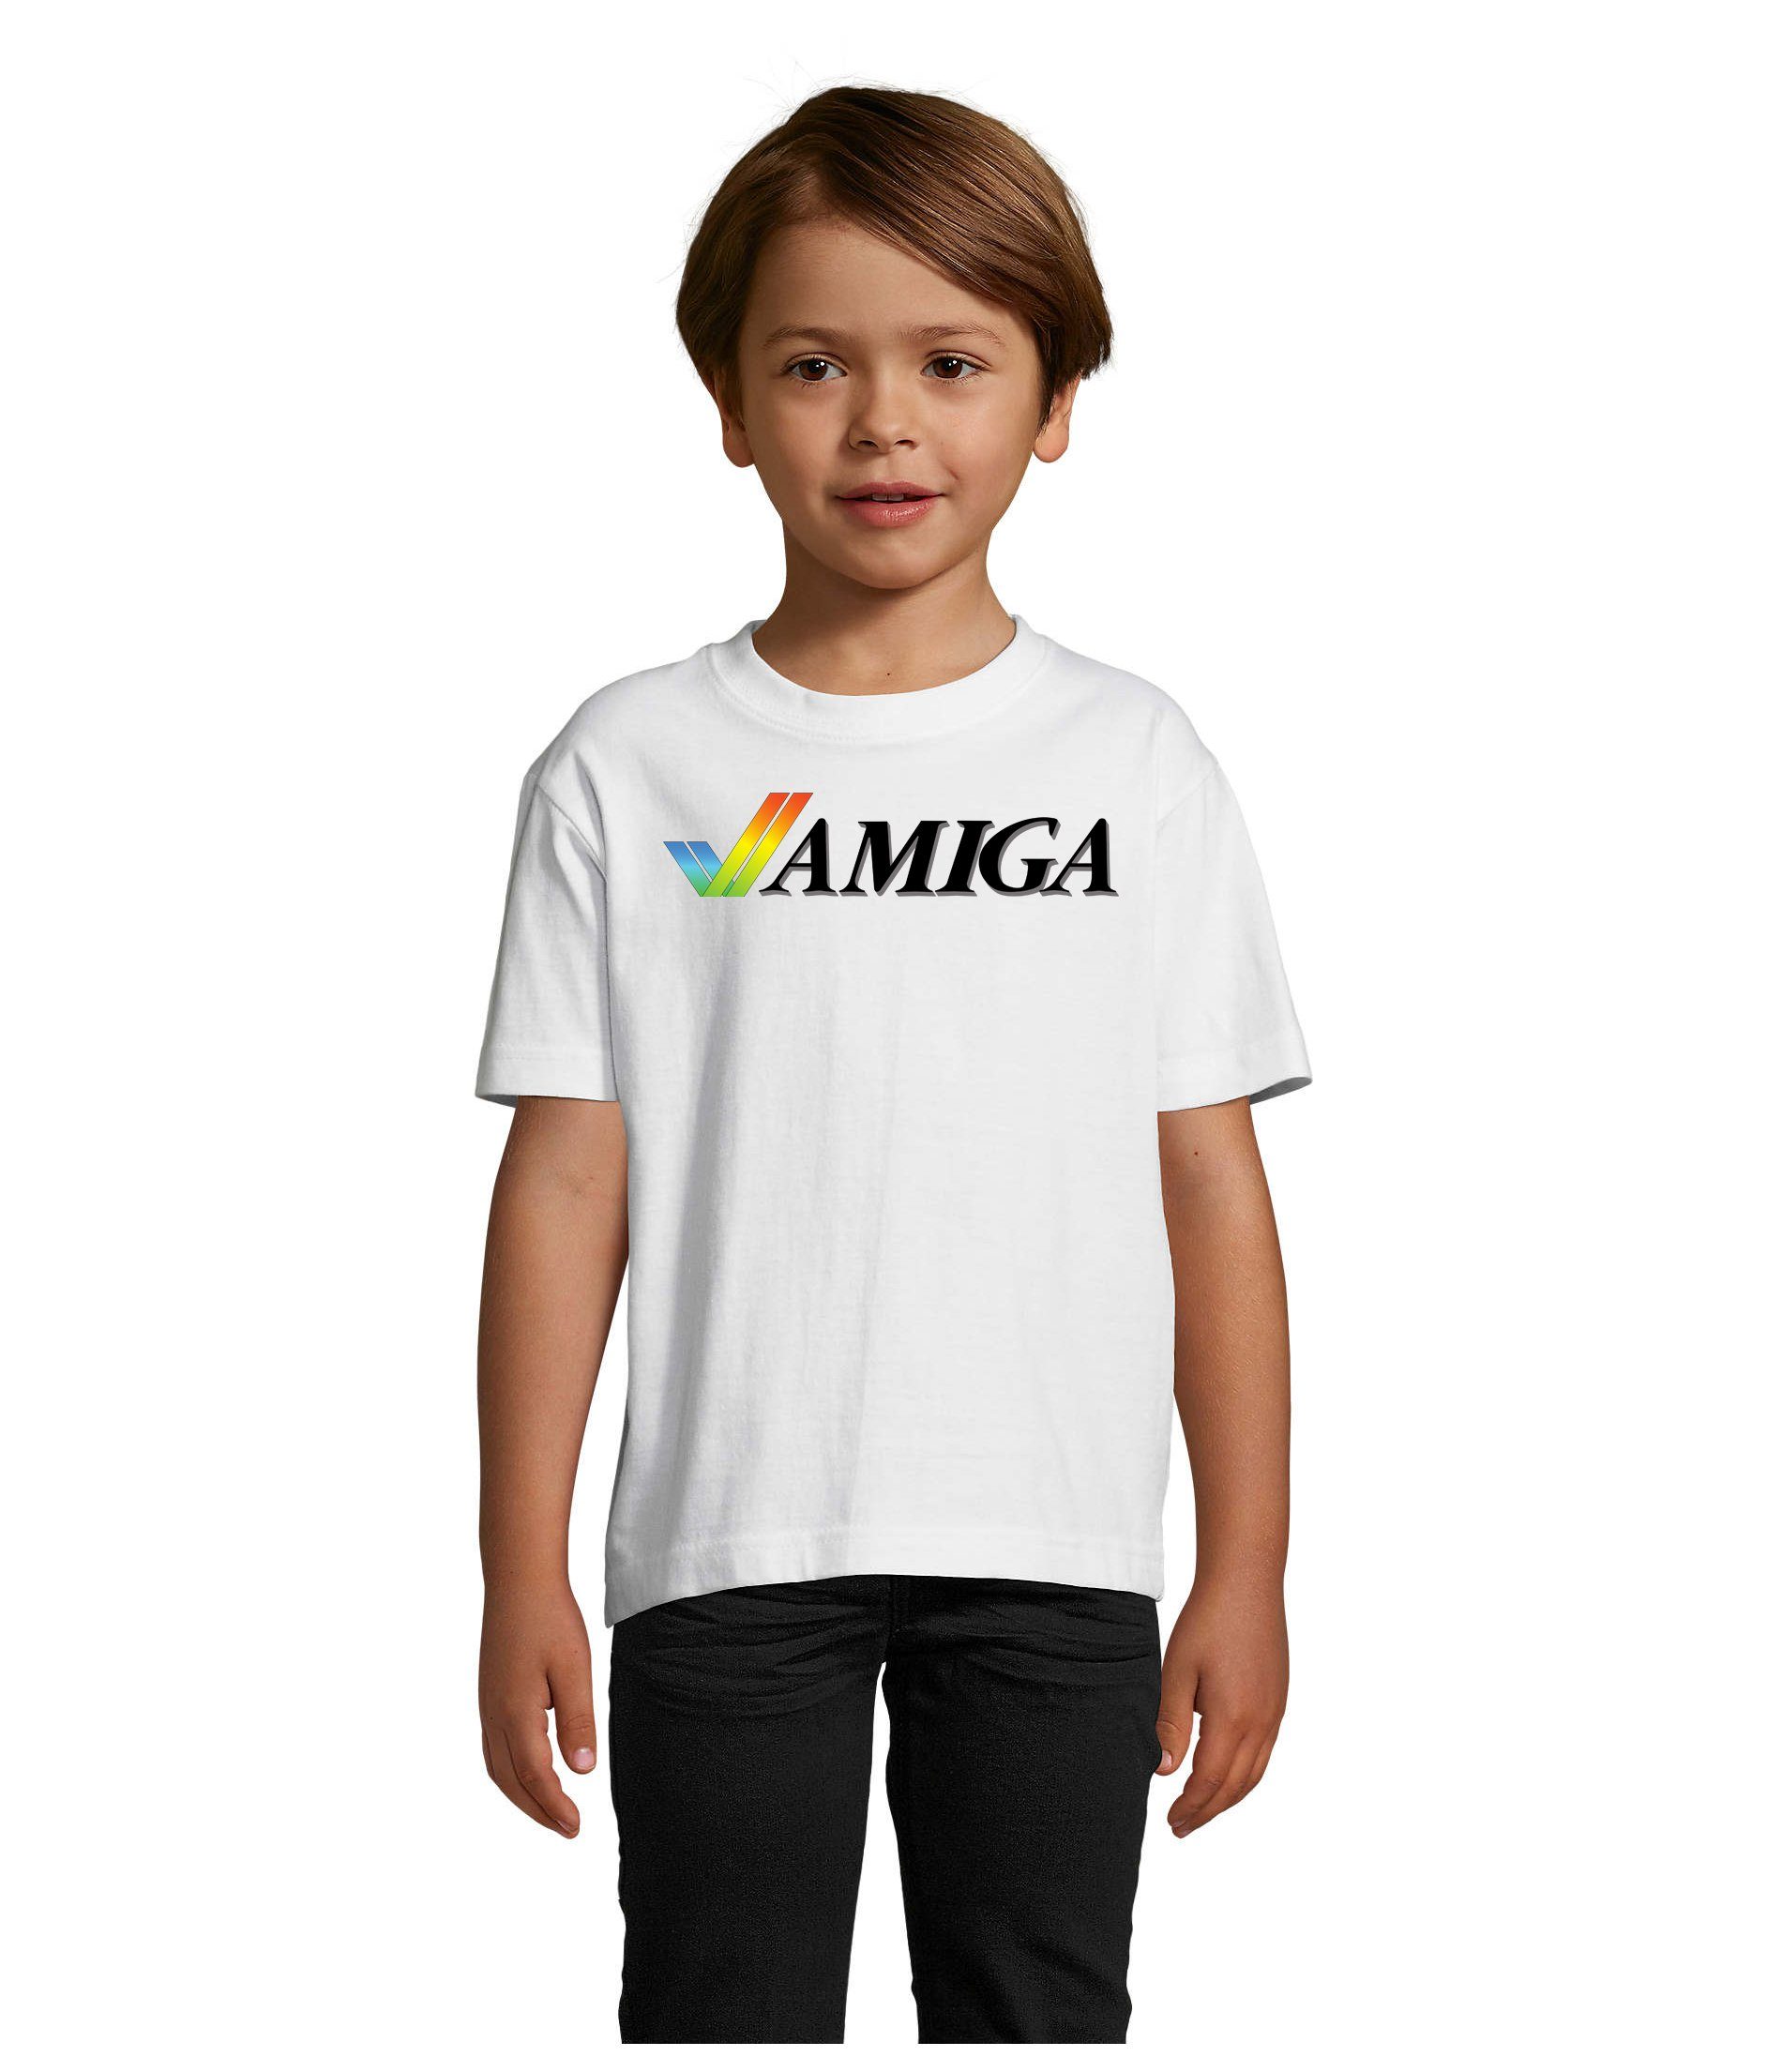 Blondie & Brownie T-Shirt Kinder Jungen & Mädchen Amiga Spiele Konsole Atari Commodore Nintendo Weiss